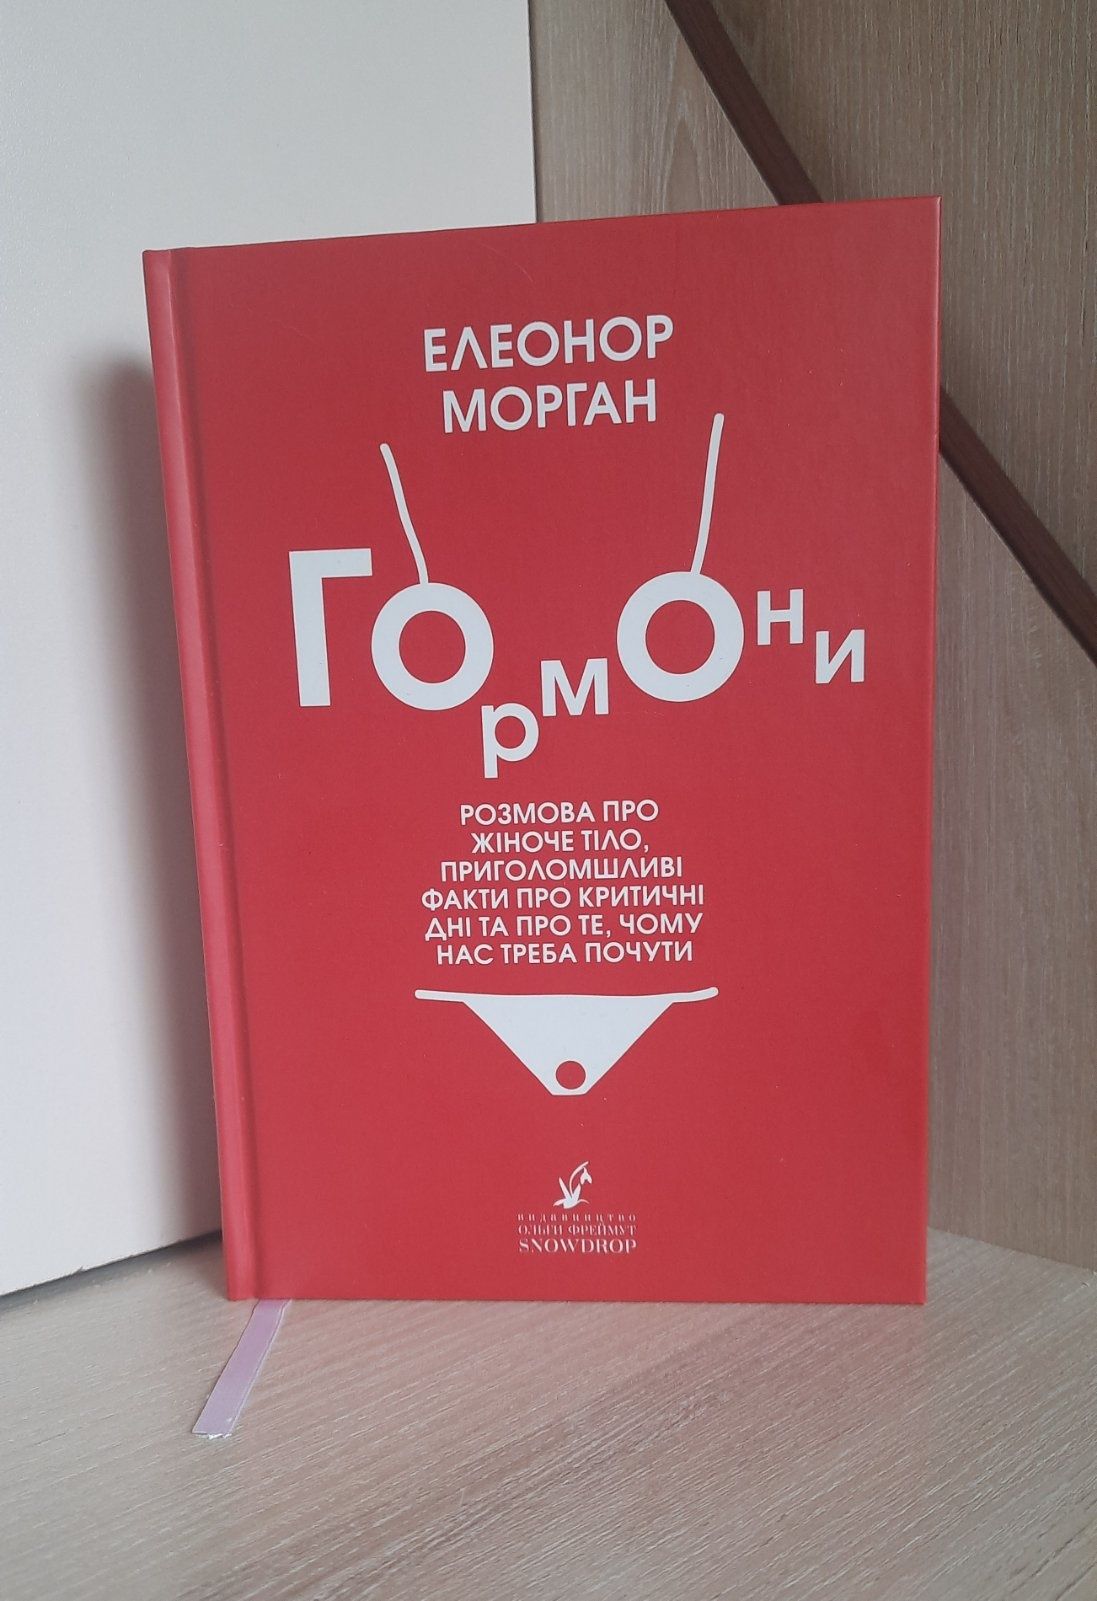 Книга Елеонор Морган "Гормони"